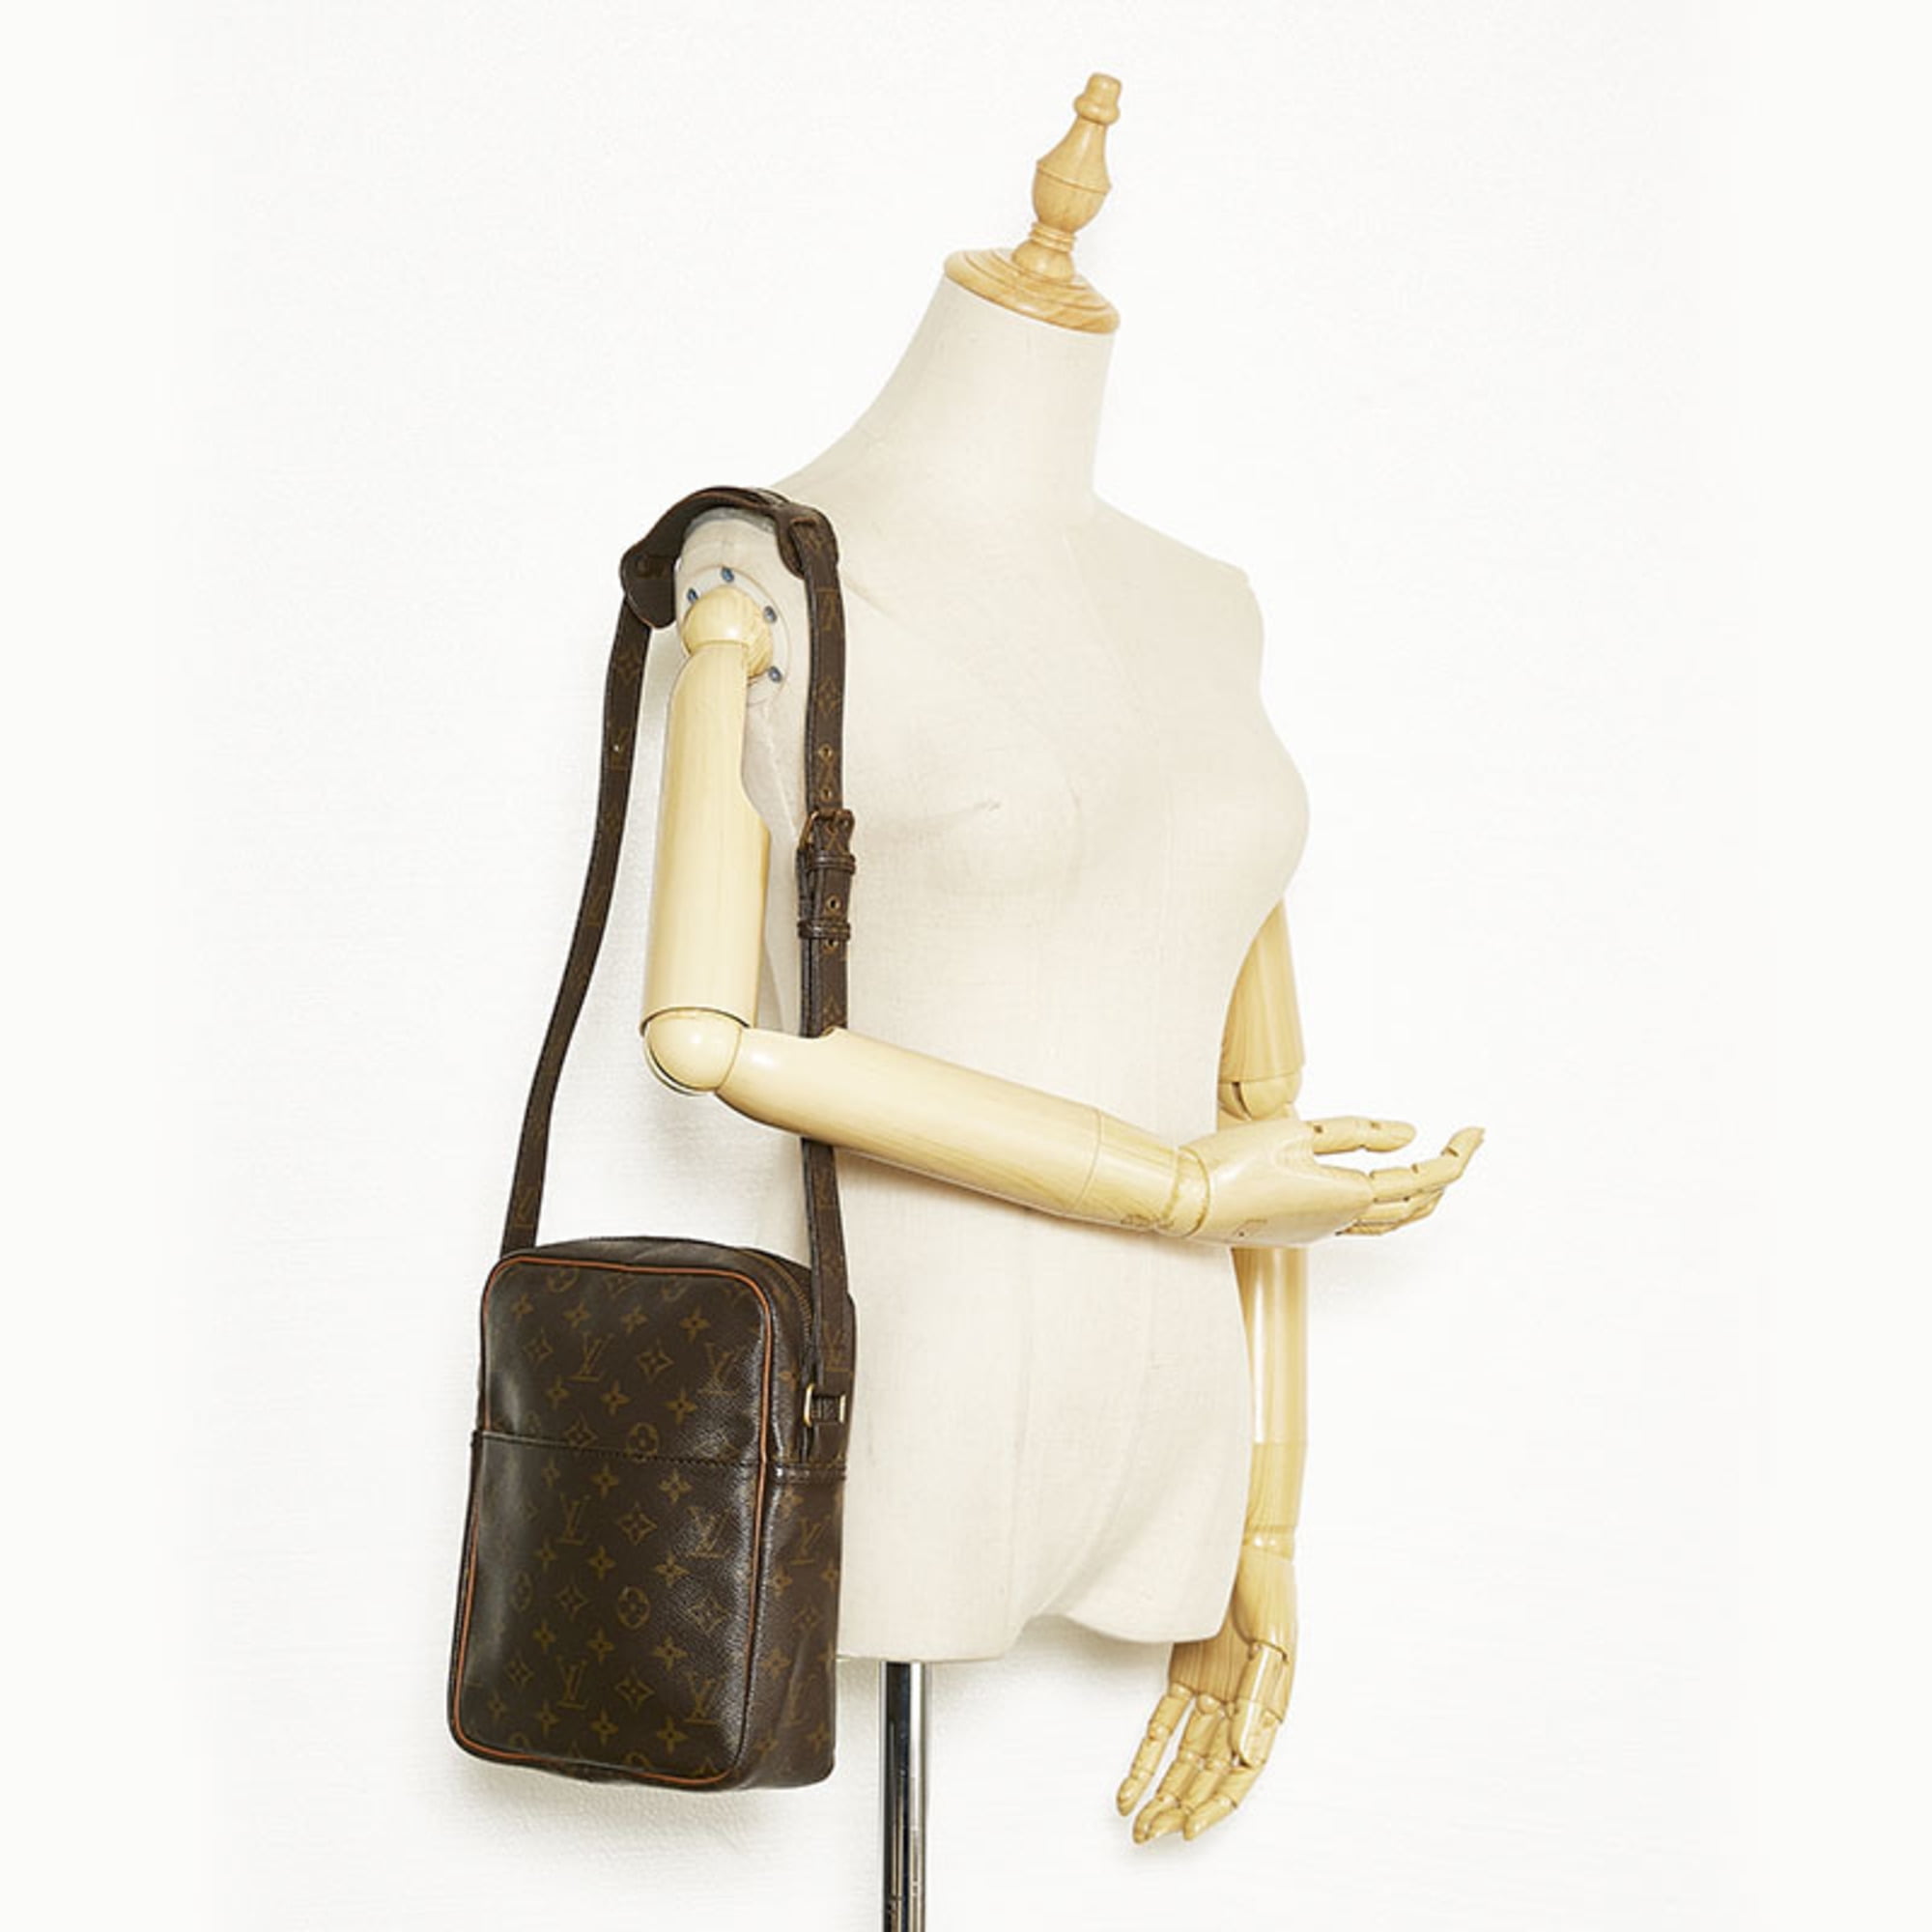 Louis-Vuitton-Monogram-Marceau-Shoulder-Bag-Messenger-Bag-M40264